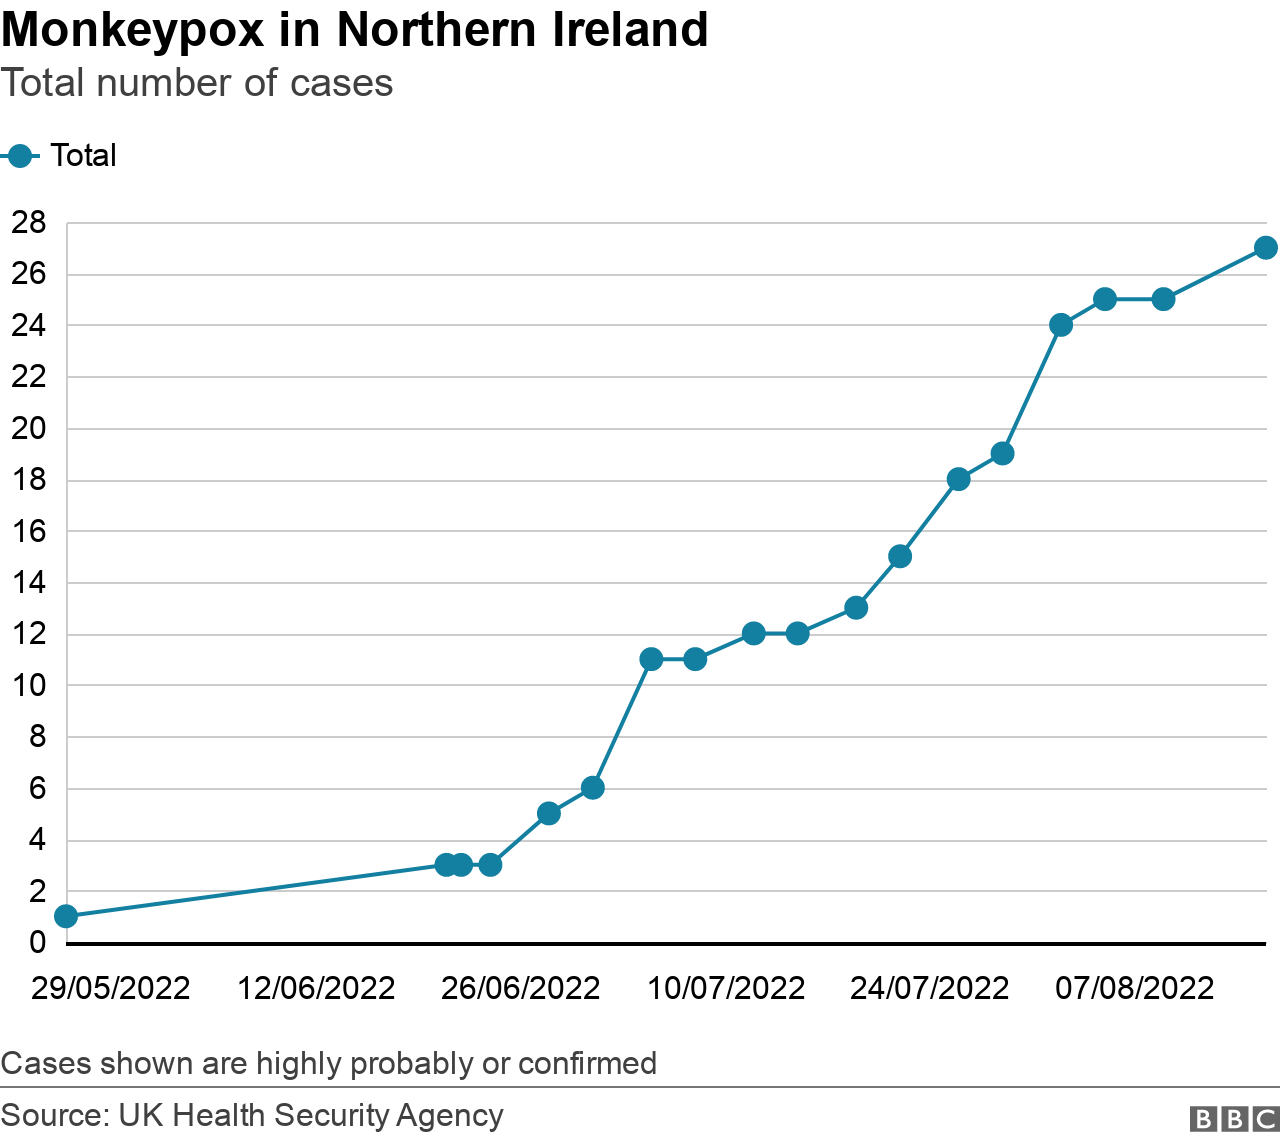 Statistics on monkeypox cases in Northern Ireland